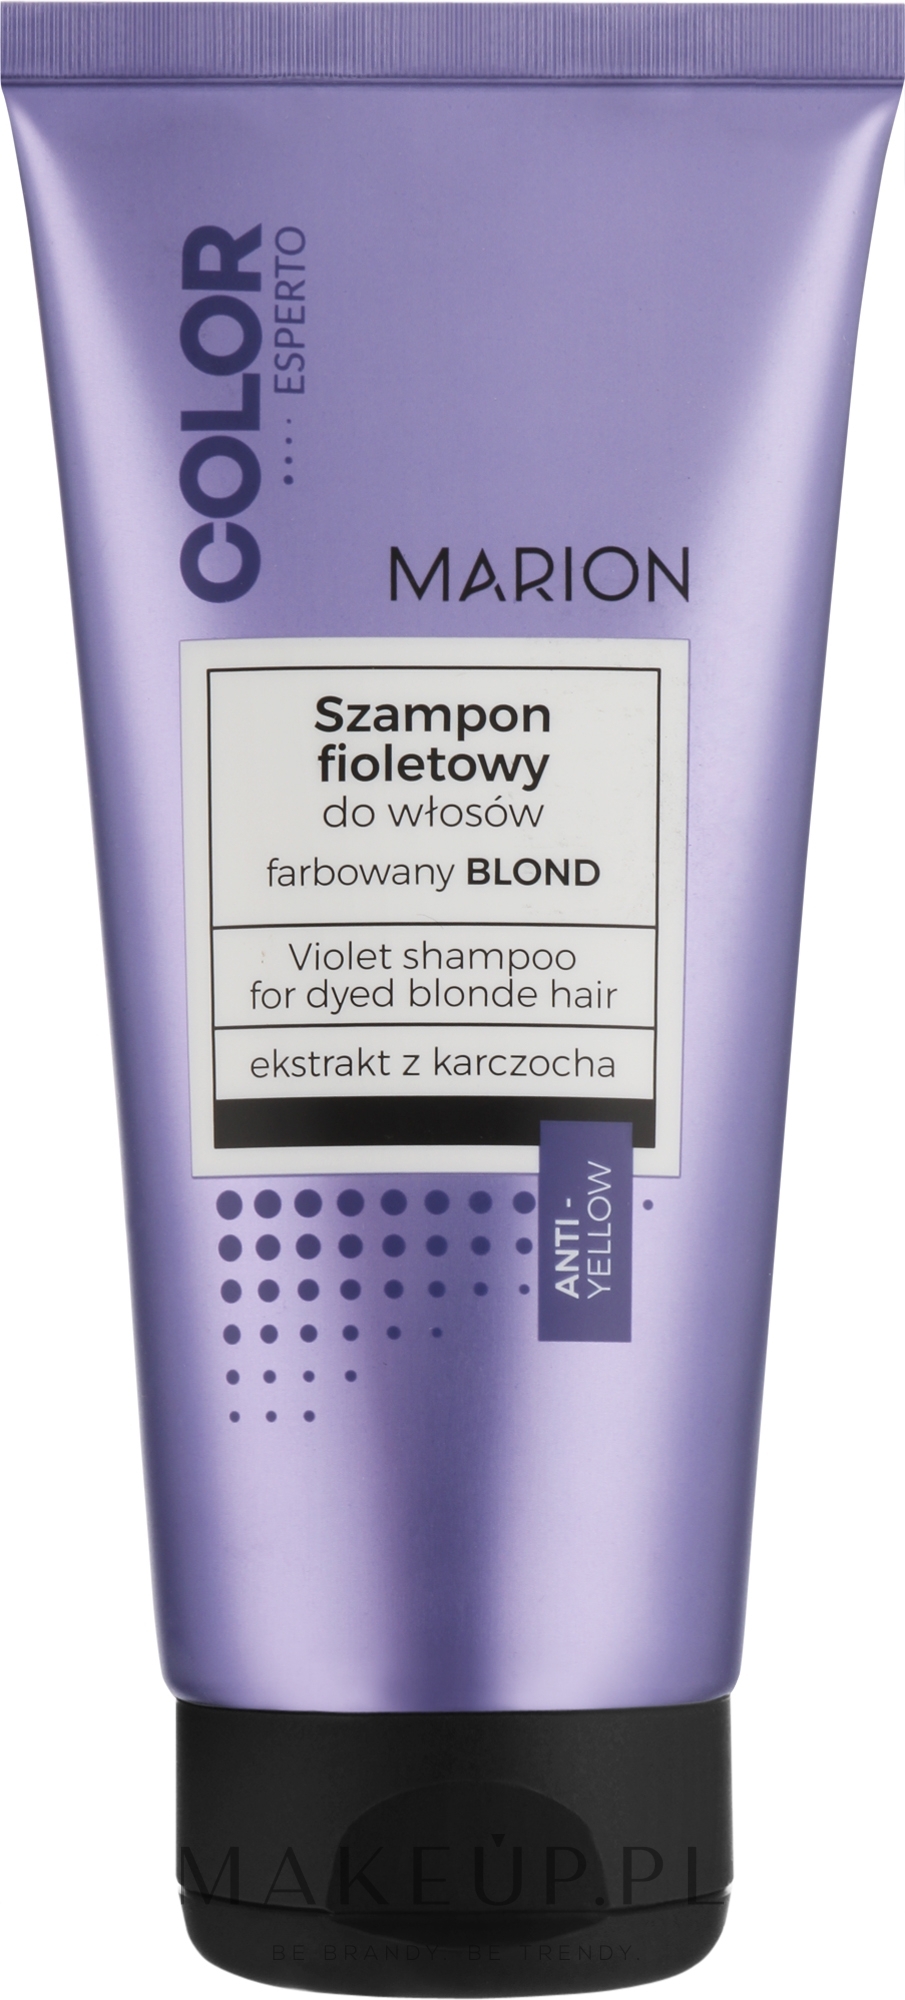 wizaz kwc martion szampon fioletowy